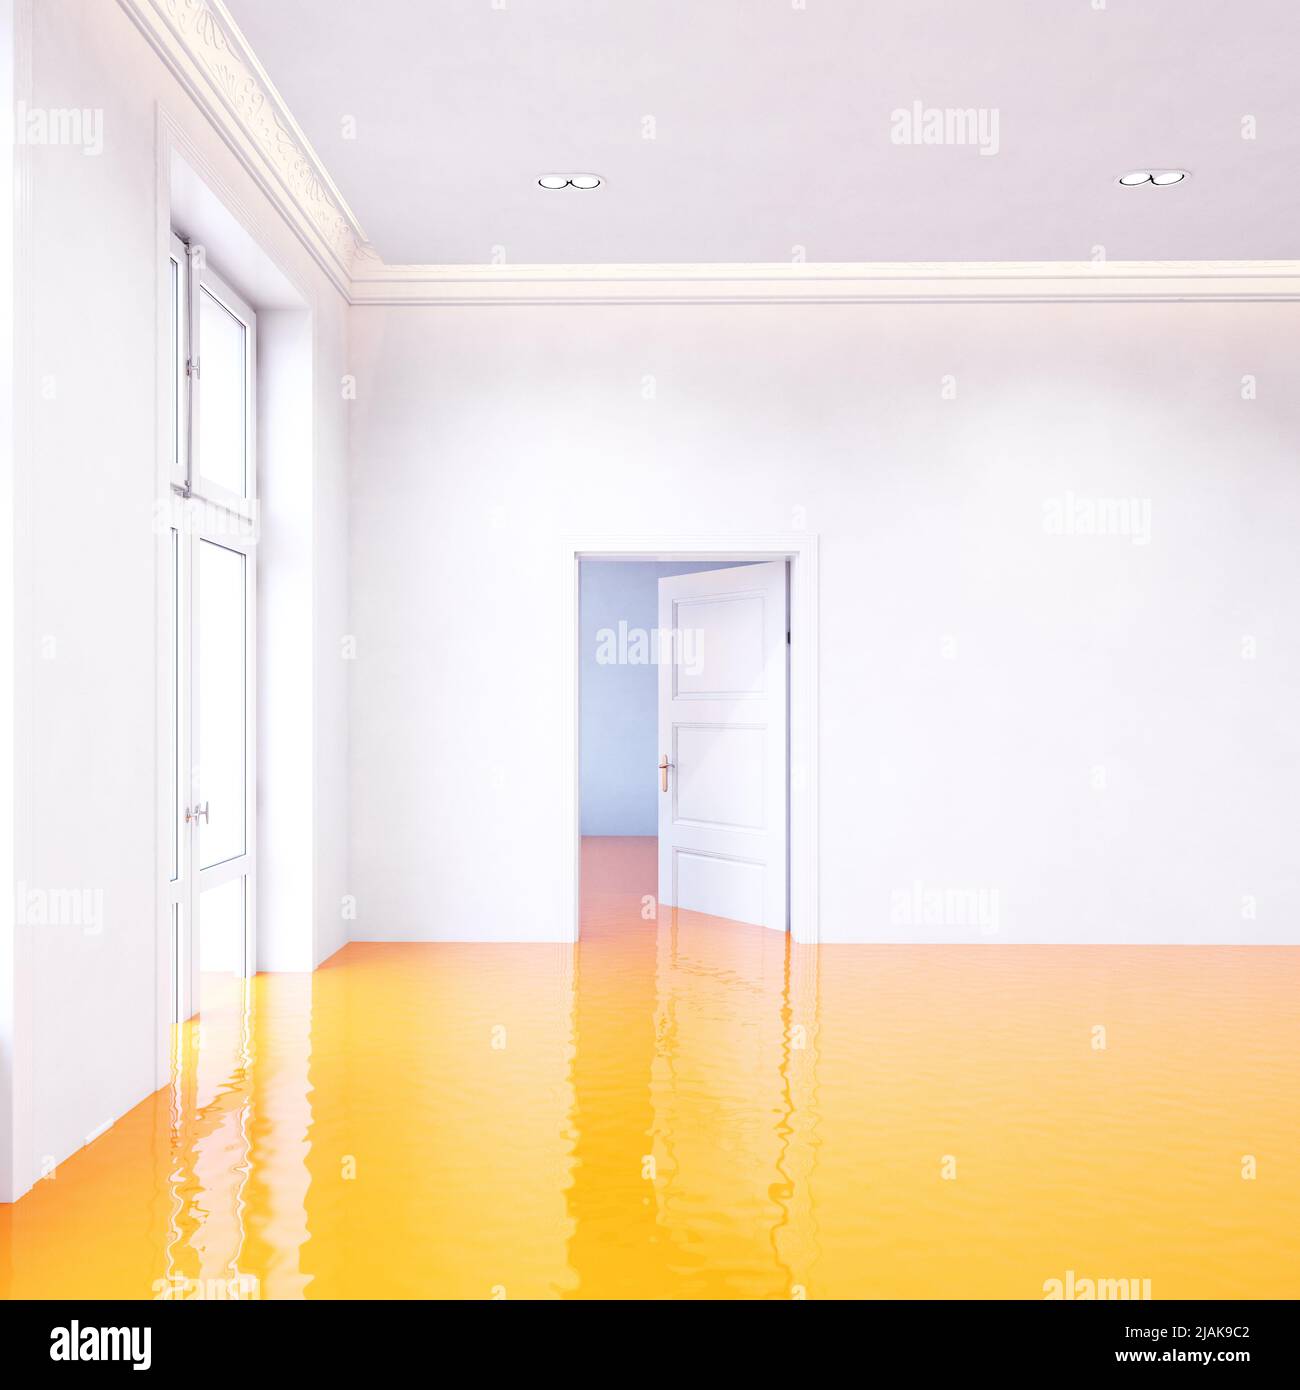 le jus d'orange envahit la chambre. 3d illustration créative Banque D'Images